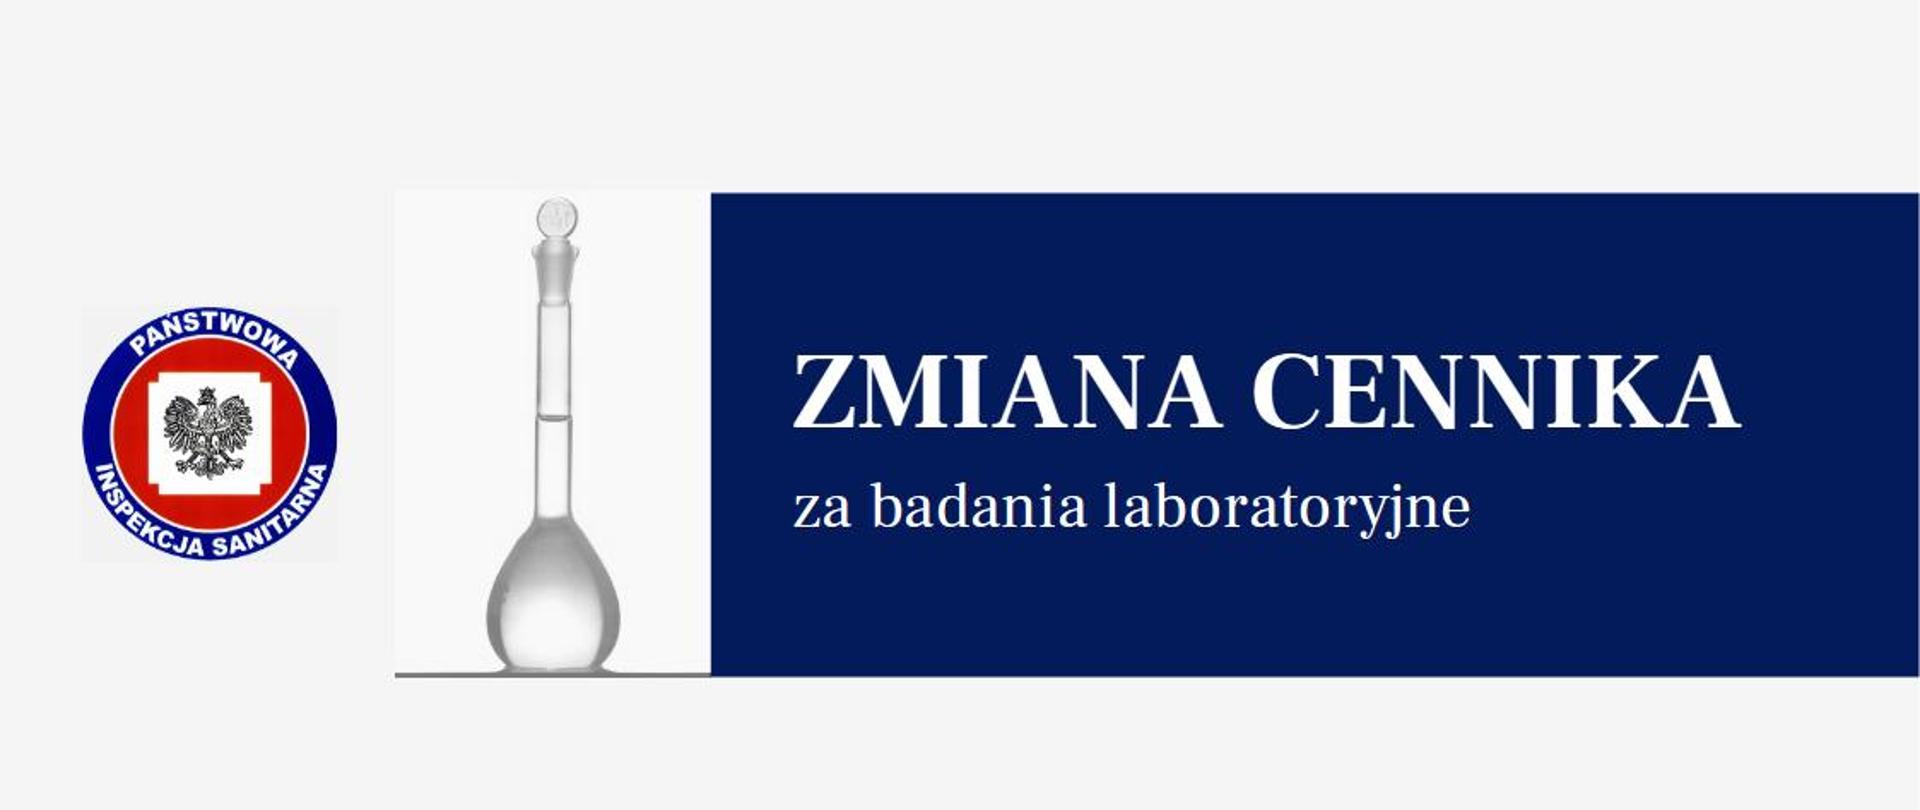 logo Państwowej Inspekcji Sanitarnej, szkło laboratoryjne, etykieta z tekstem Zmiana cennika za badania laboratoryjne